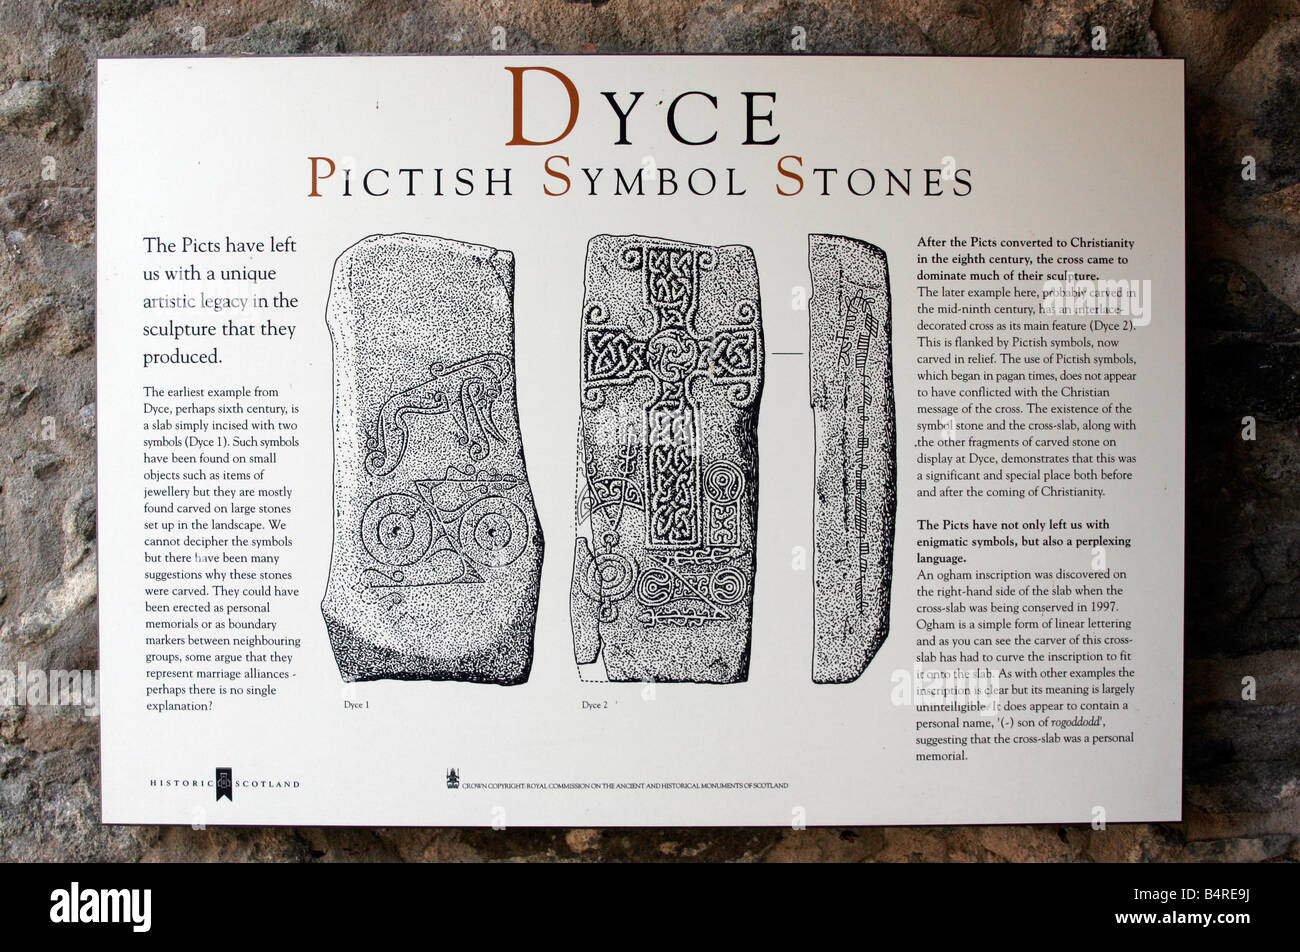 Segno a Dyce Pictish Symbol pietre in Scozia Foto Stock